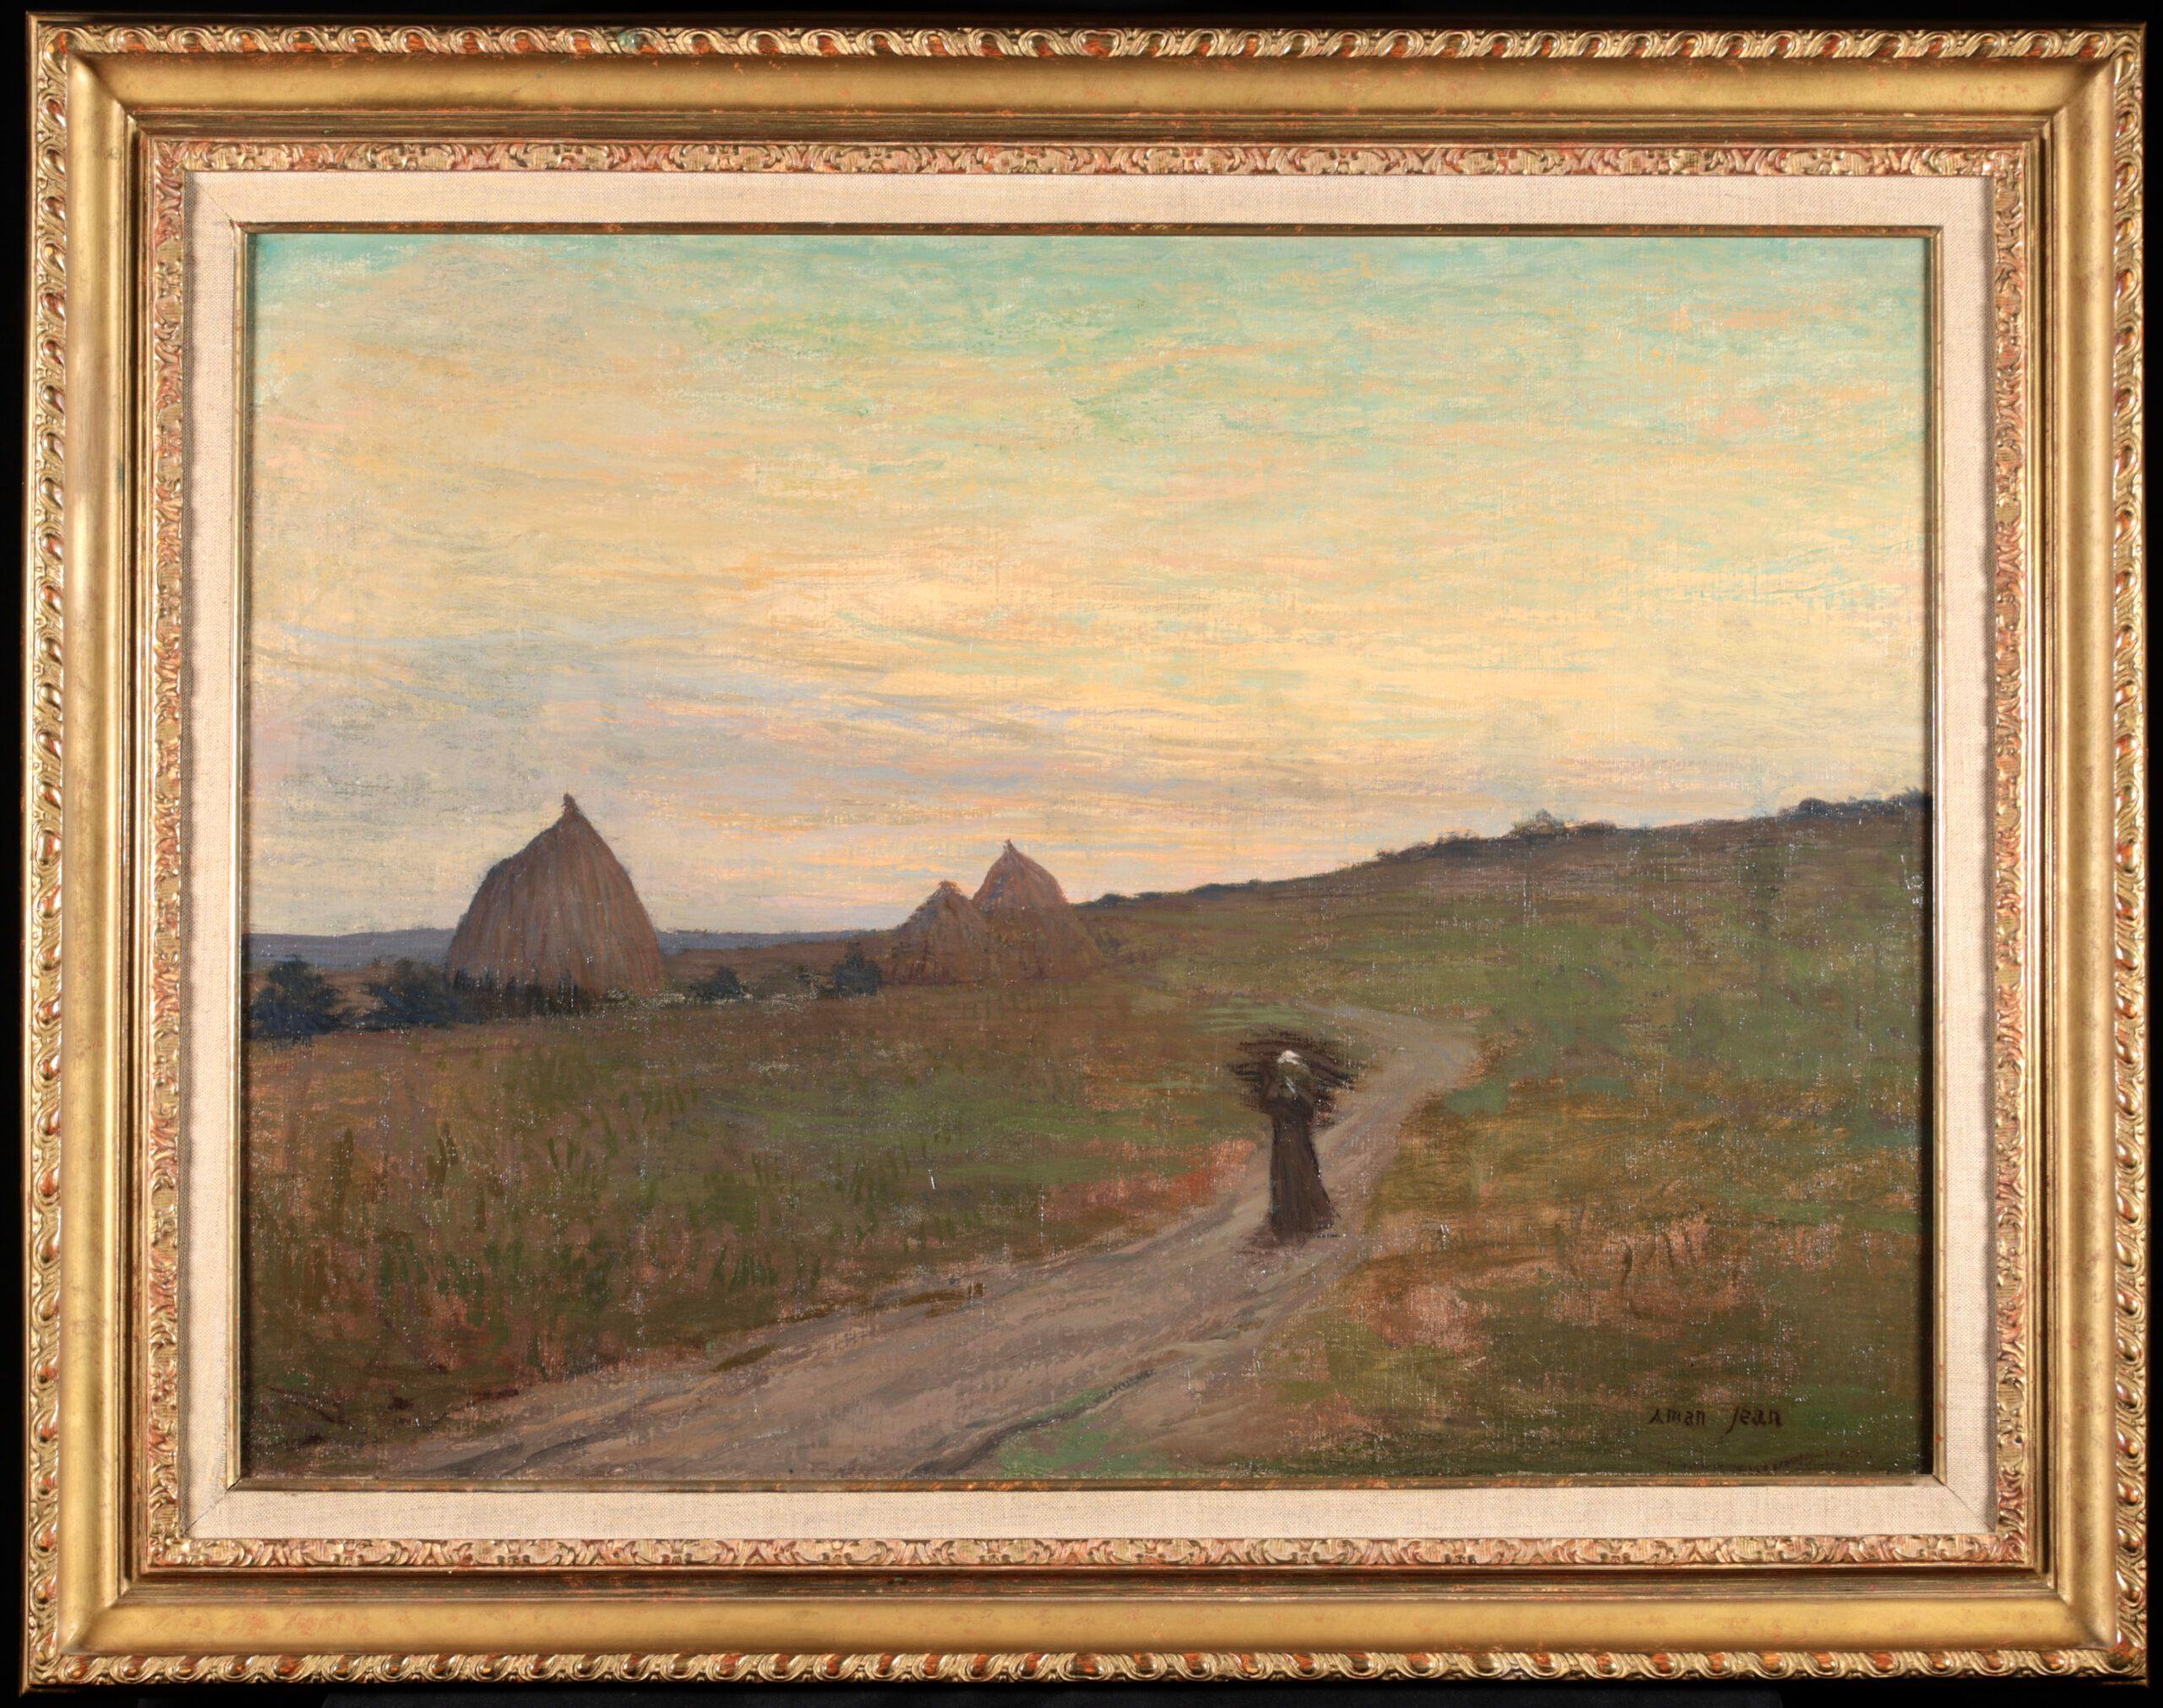 Signierte symbolistische Figur in Landschaft Öl auf Original-Leinwand um 1890 von Französisch Maler Edmond Francois Aman-Jean. Das Werk zeigt eine einsame Frau, die eine Last auf einem ländlichen Weg trägt. In der Ferne geht die Sonne in den